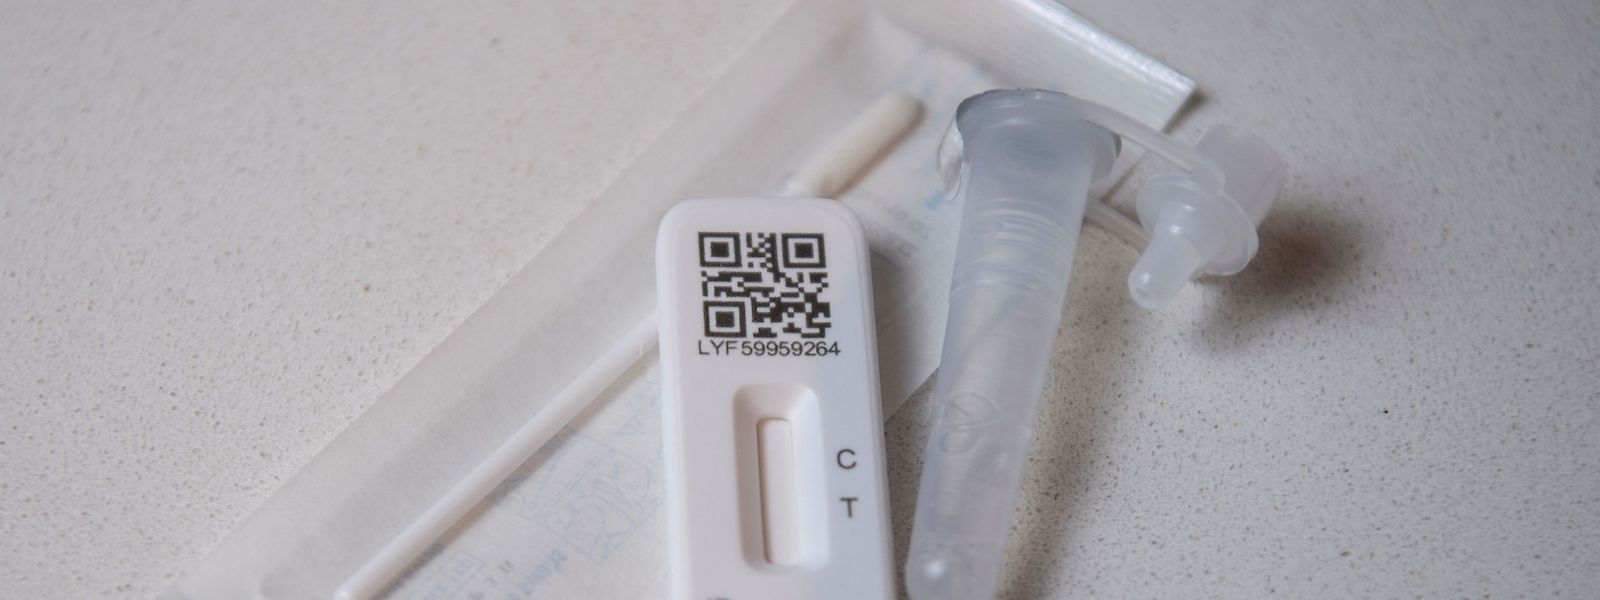 Les primovaccinés recevront des codes leur permettant d'effectuer 20 autotests antigéniques gratuits pour pouvoir se rendre au travail.